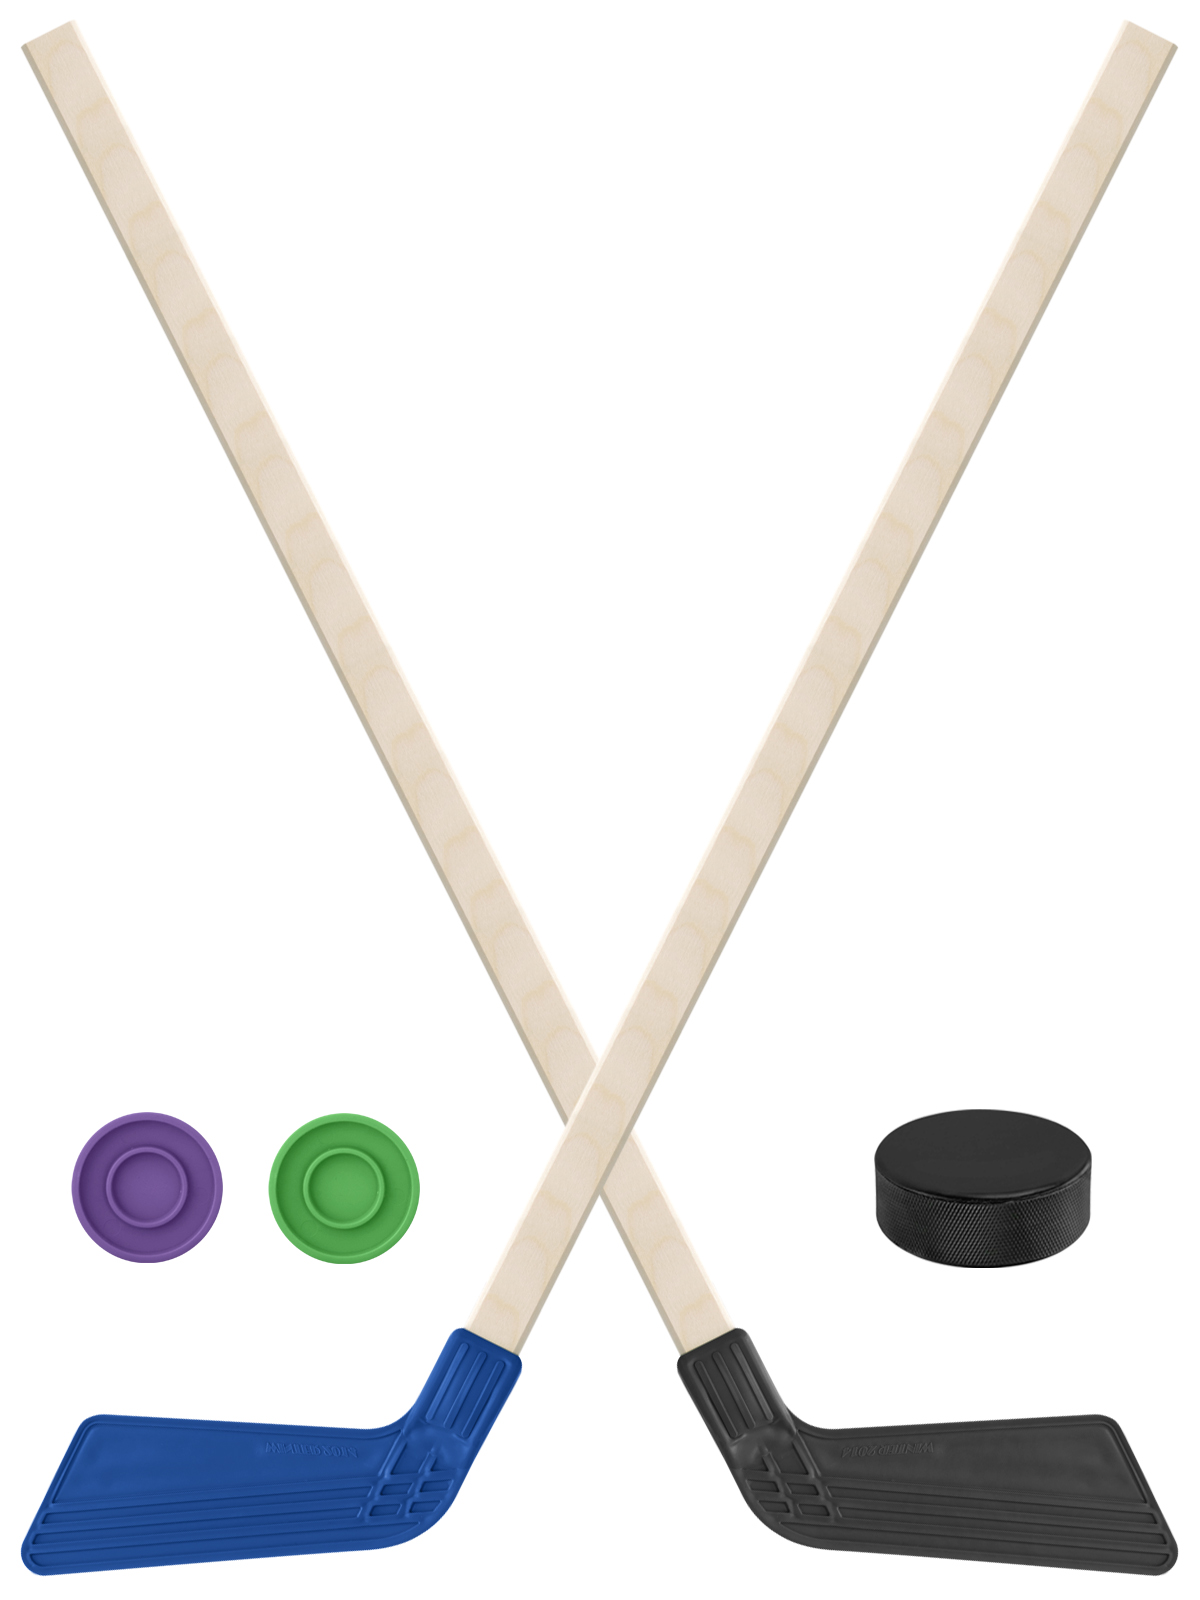 Детский хоккейный набор Задира-плюс Клюшка хоккейная 2шт(син,чёрн)+2шайбы+Шайба 75 мм клюшка флорбольная acito beta 35 black 95 round прямой 3006 041